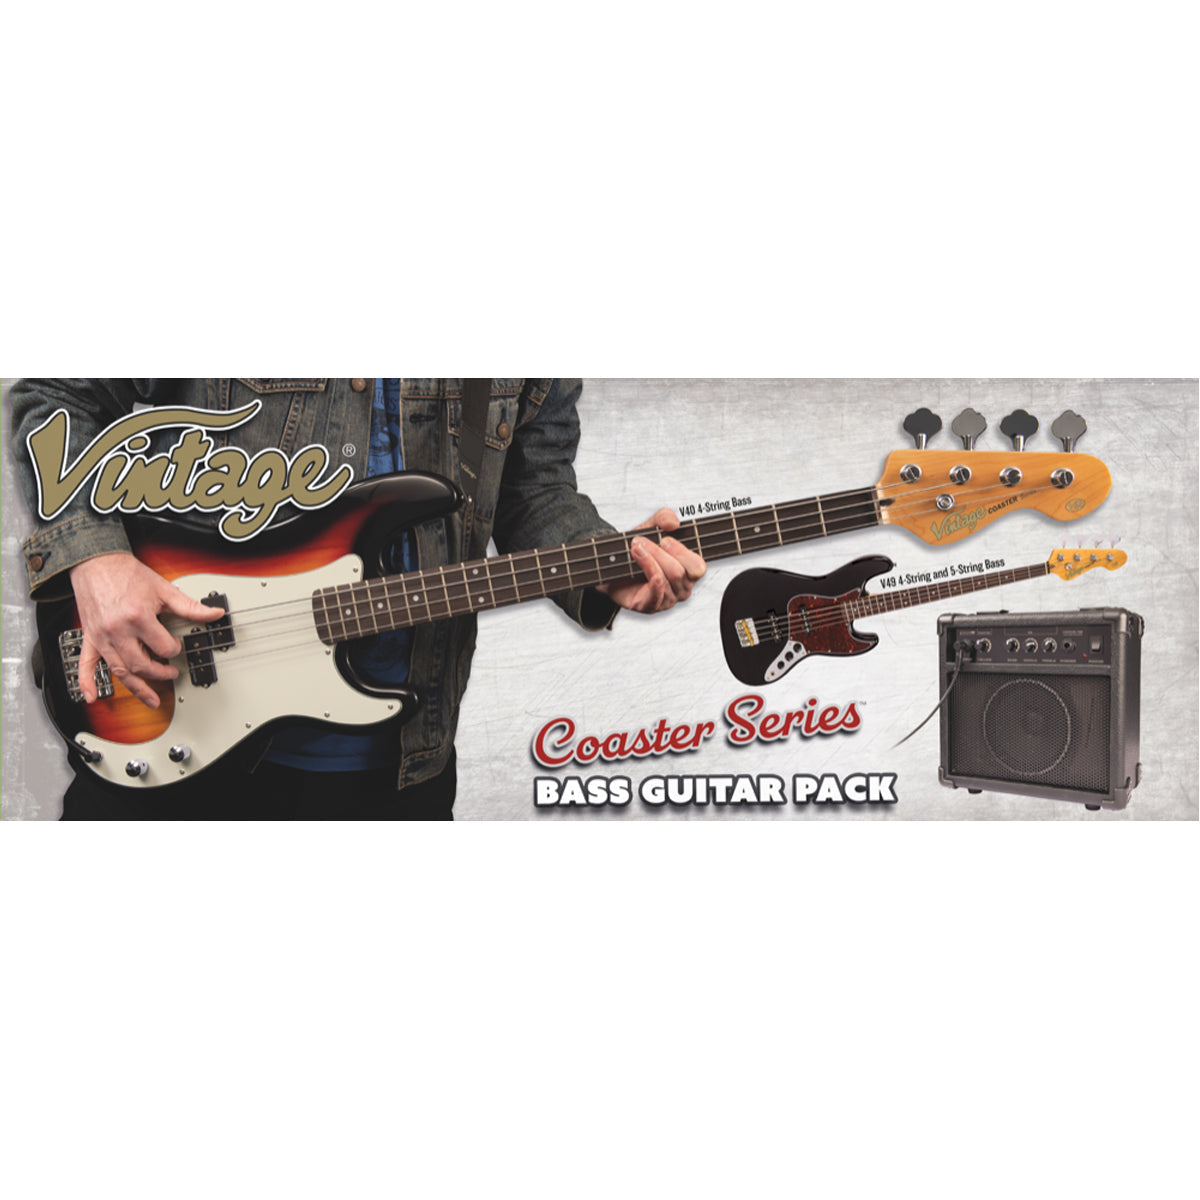 Vintage V49 Coaster Series Bass Guitar Pack ~ Vintage White, Bass Guitar Packs for sale at Richards Guitars.